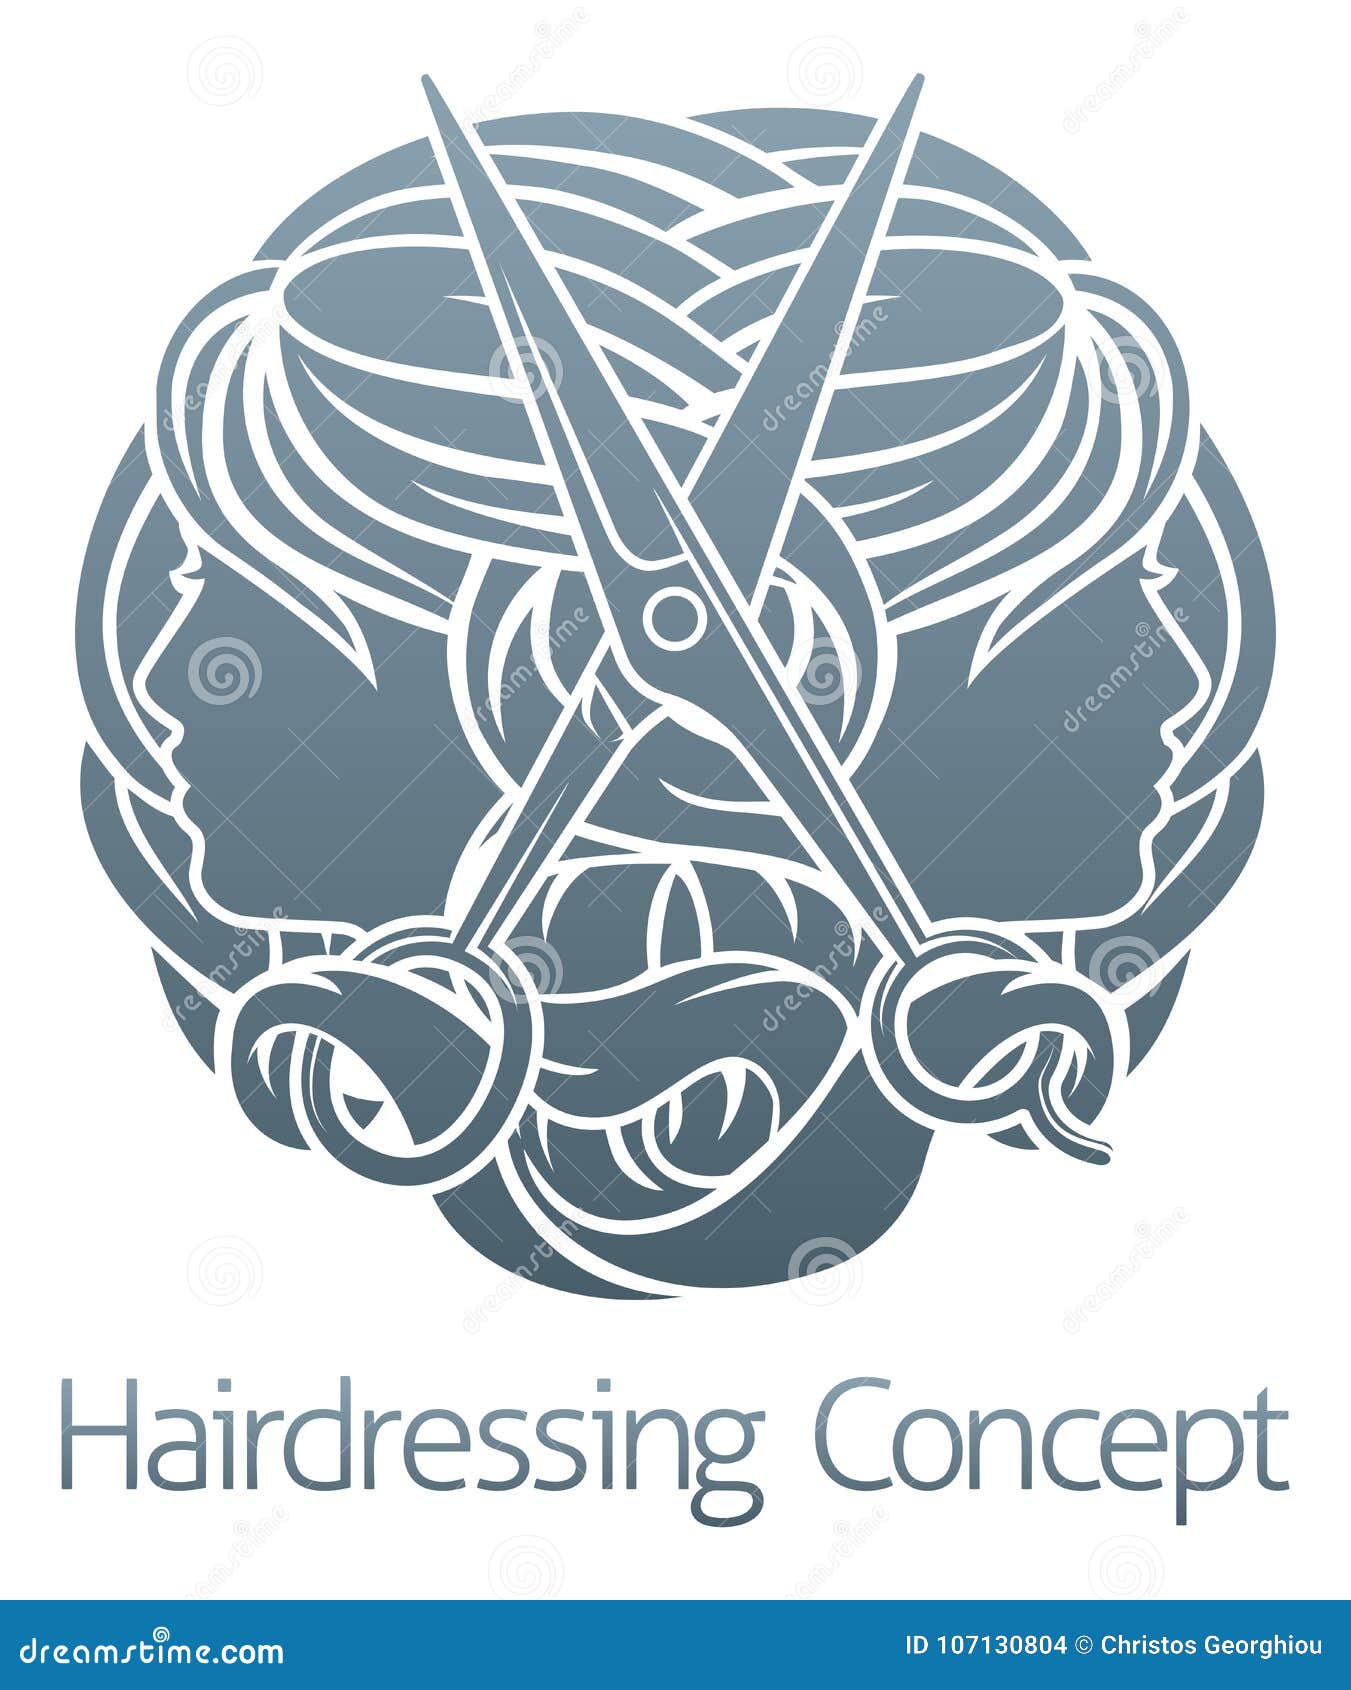 salon stylist hairdresser concept